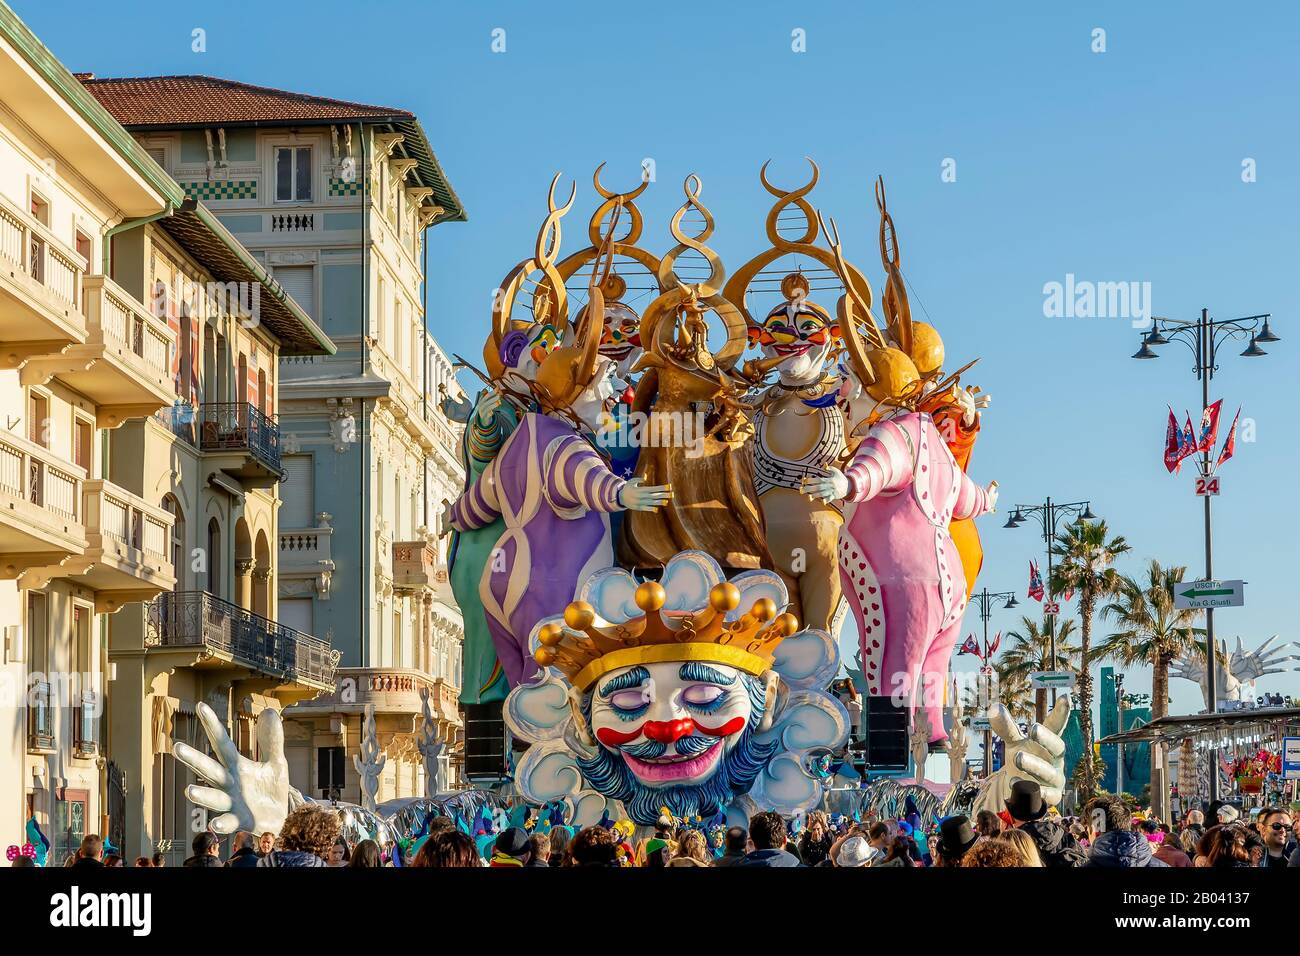 The allegorical float entitled 'Abbracciami è Carnevale' during the parade in Viareggio, Italy Stock Photo